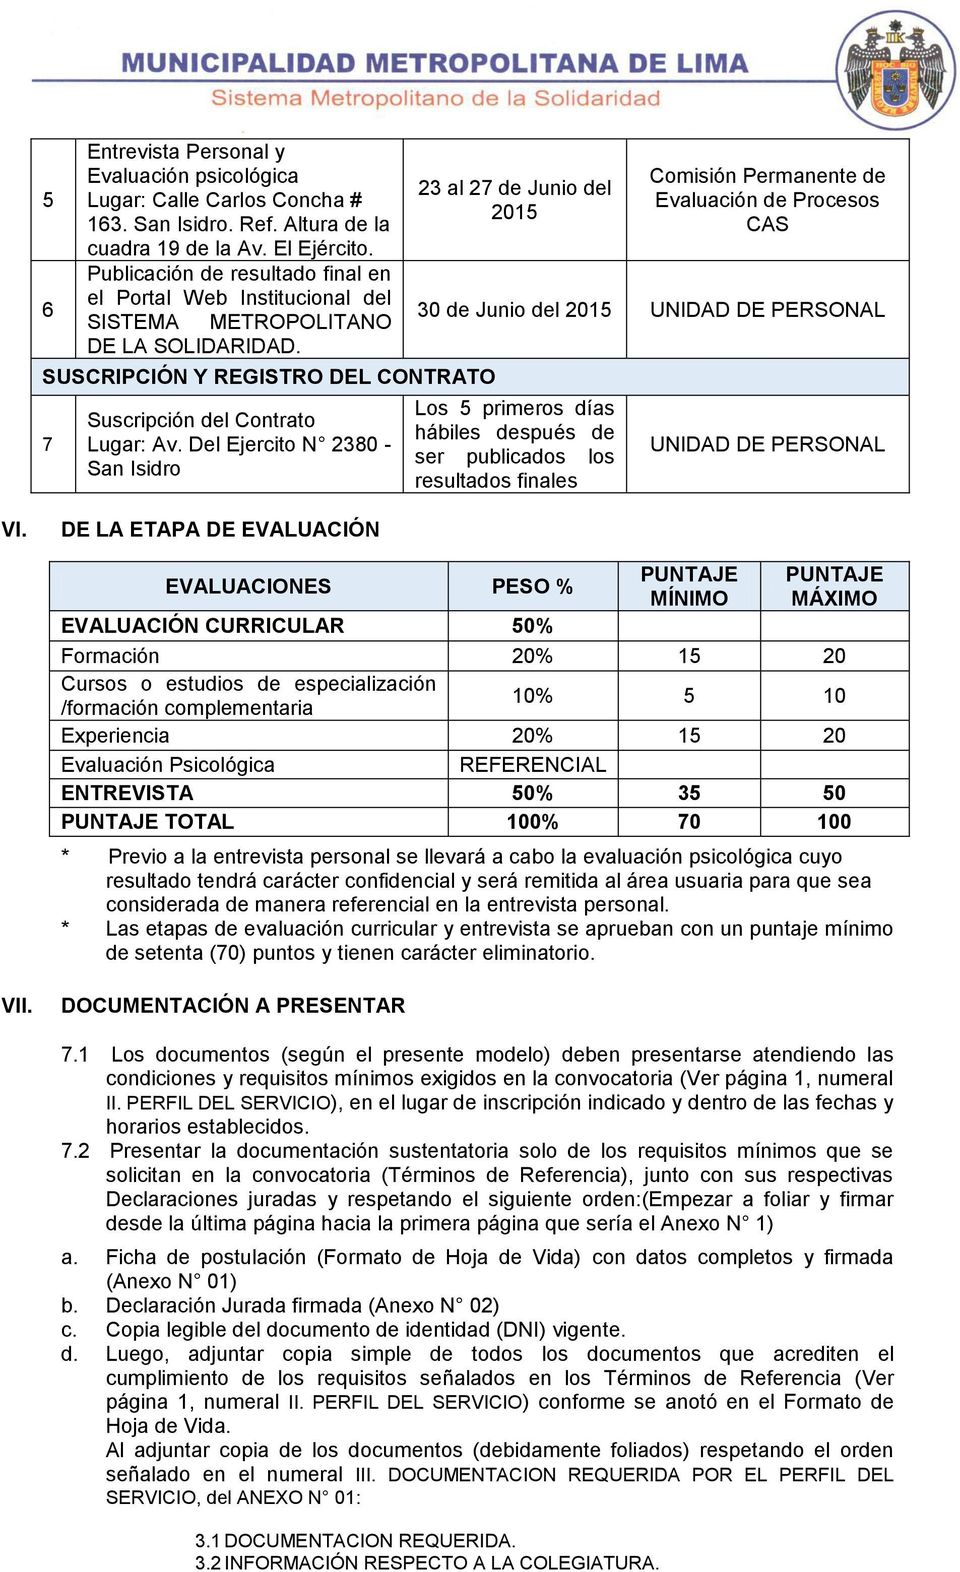 Del Ejercito N 2380 - San Isidro 23 al 27 de Junio del 2015 Comisión Permanente de Evaluación de Procesos CAS 30 de Junio del 2015 UNIDAD DE PERSONAL Los 5 primeros días hábiles después de ser